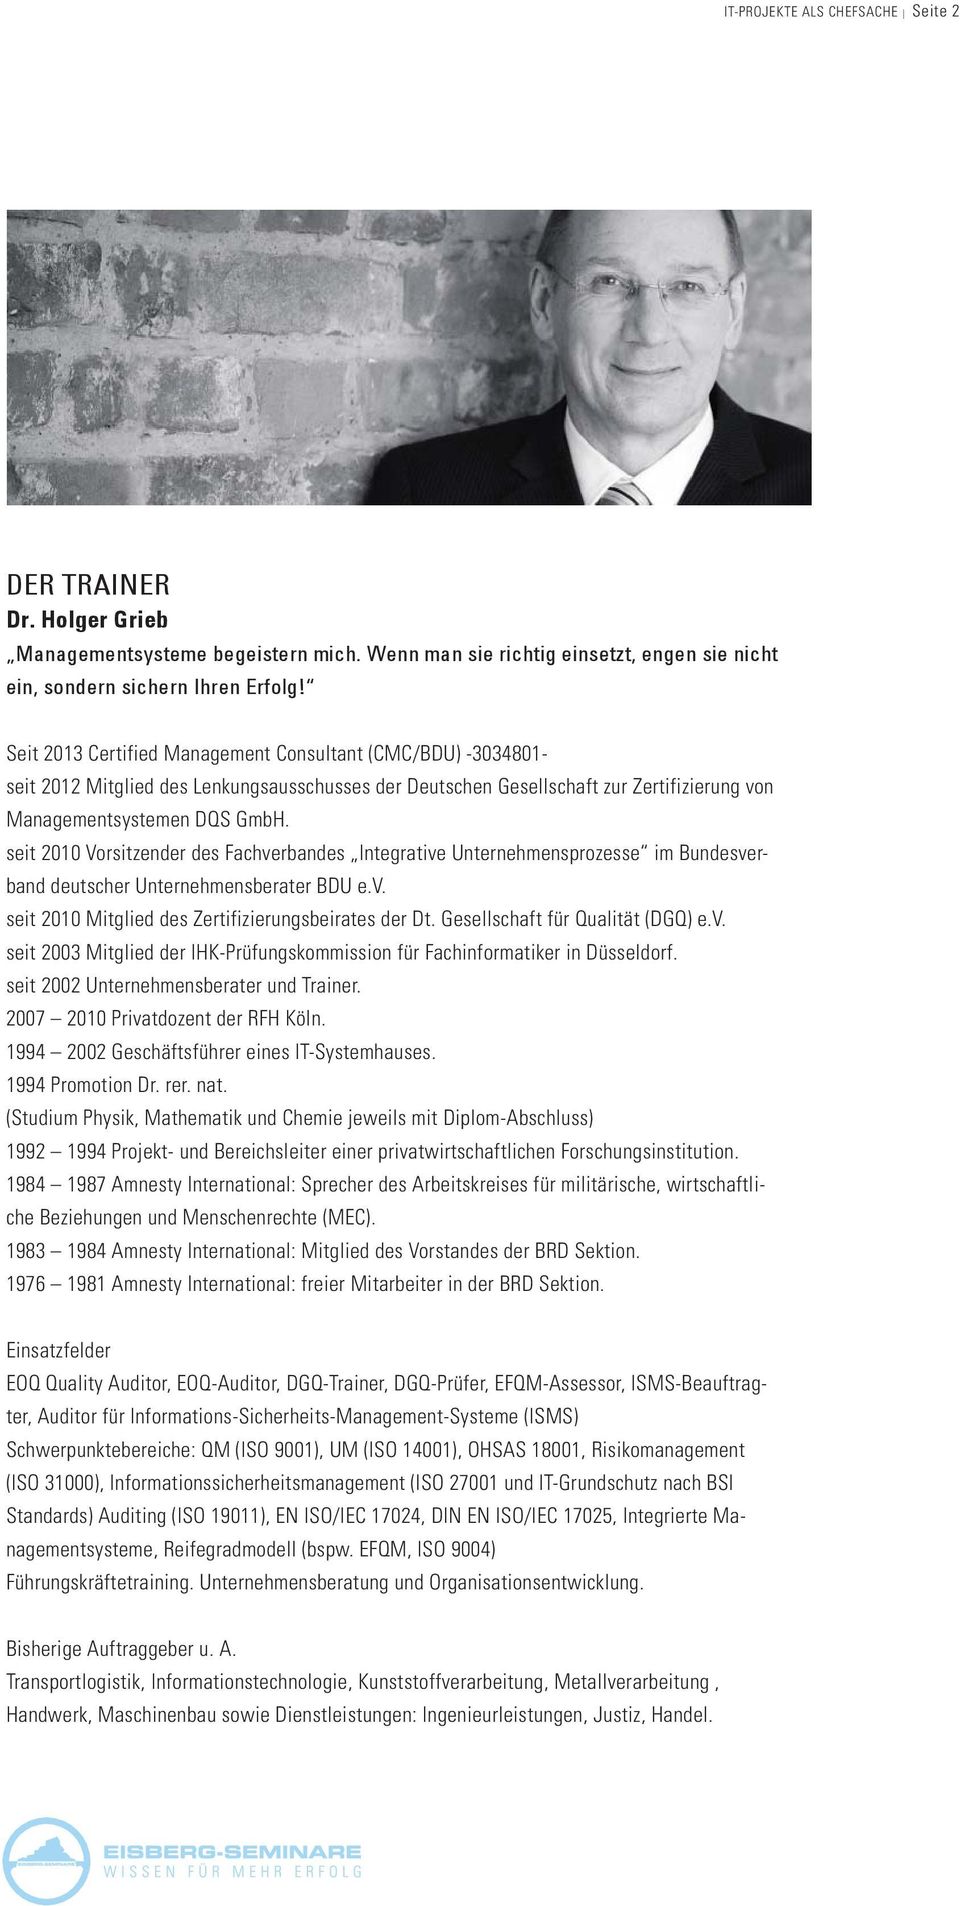 seit 2010 Vorsitzender des Fachverbandes Integrative Unternehmensprozesse im Bundesverband deutscher Unternehmensberater BDU e.v. seit 2010 Mitglied des Zertifizierungsbeirates der Dt.